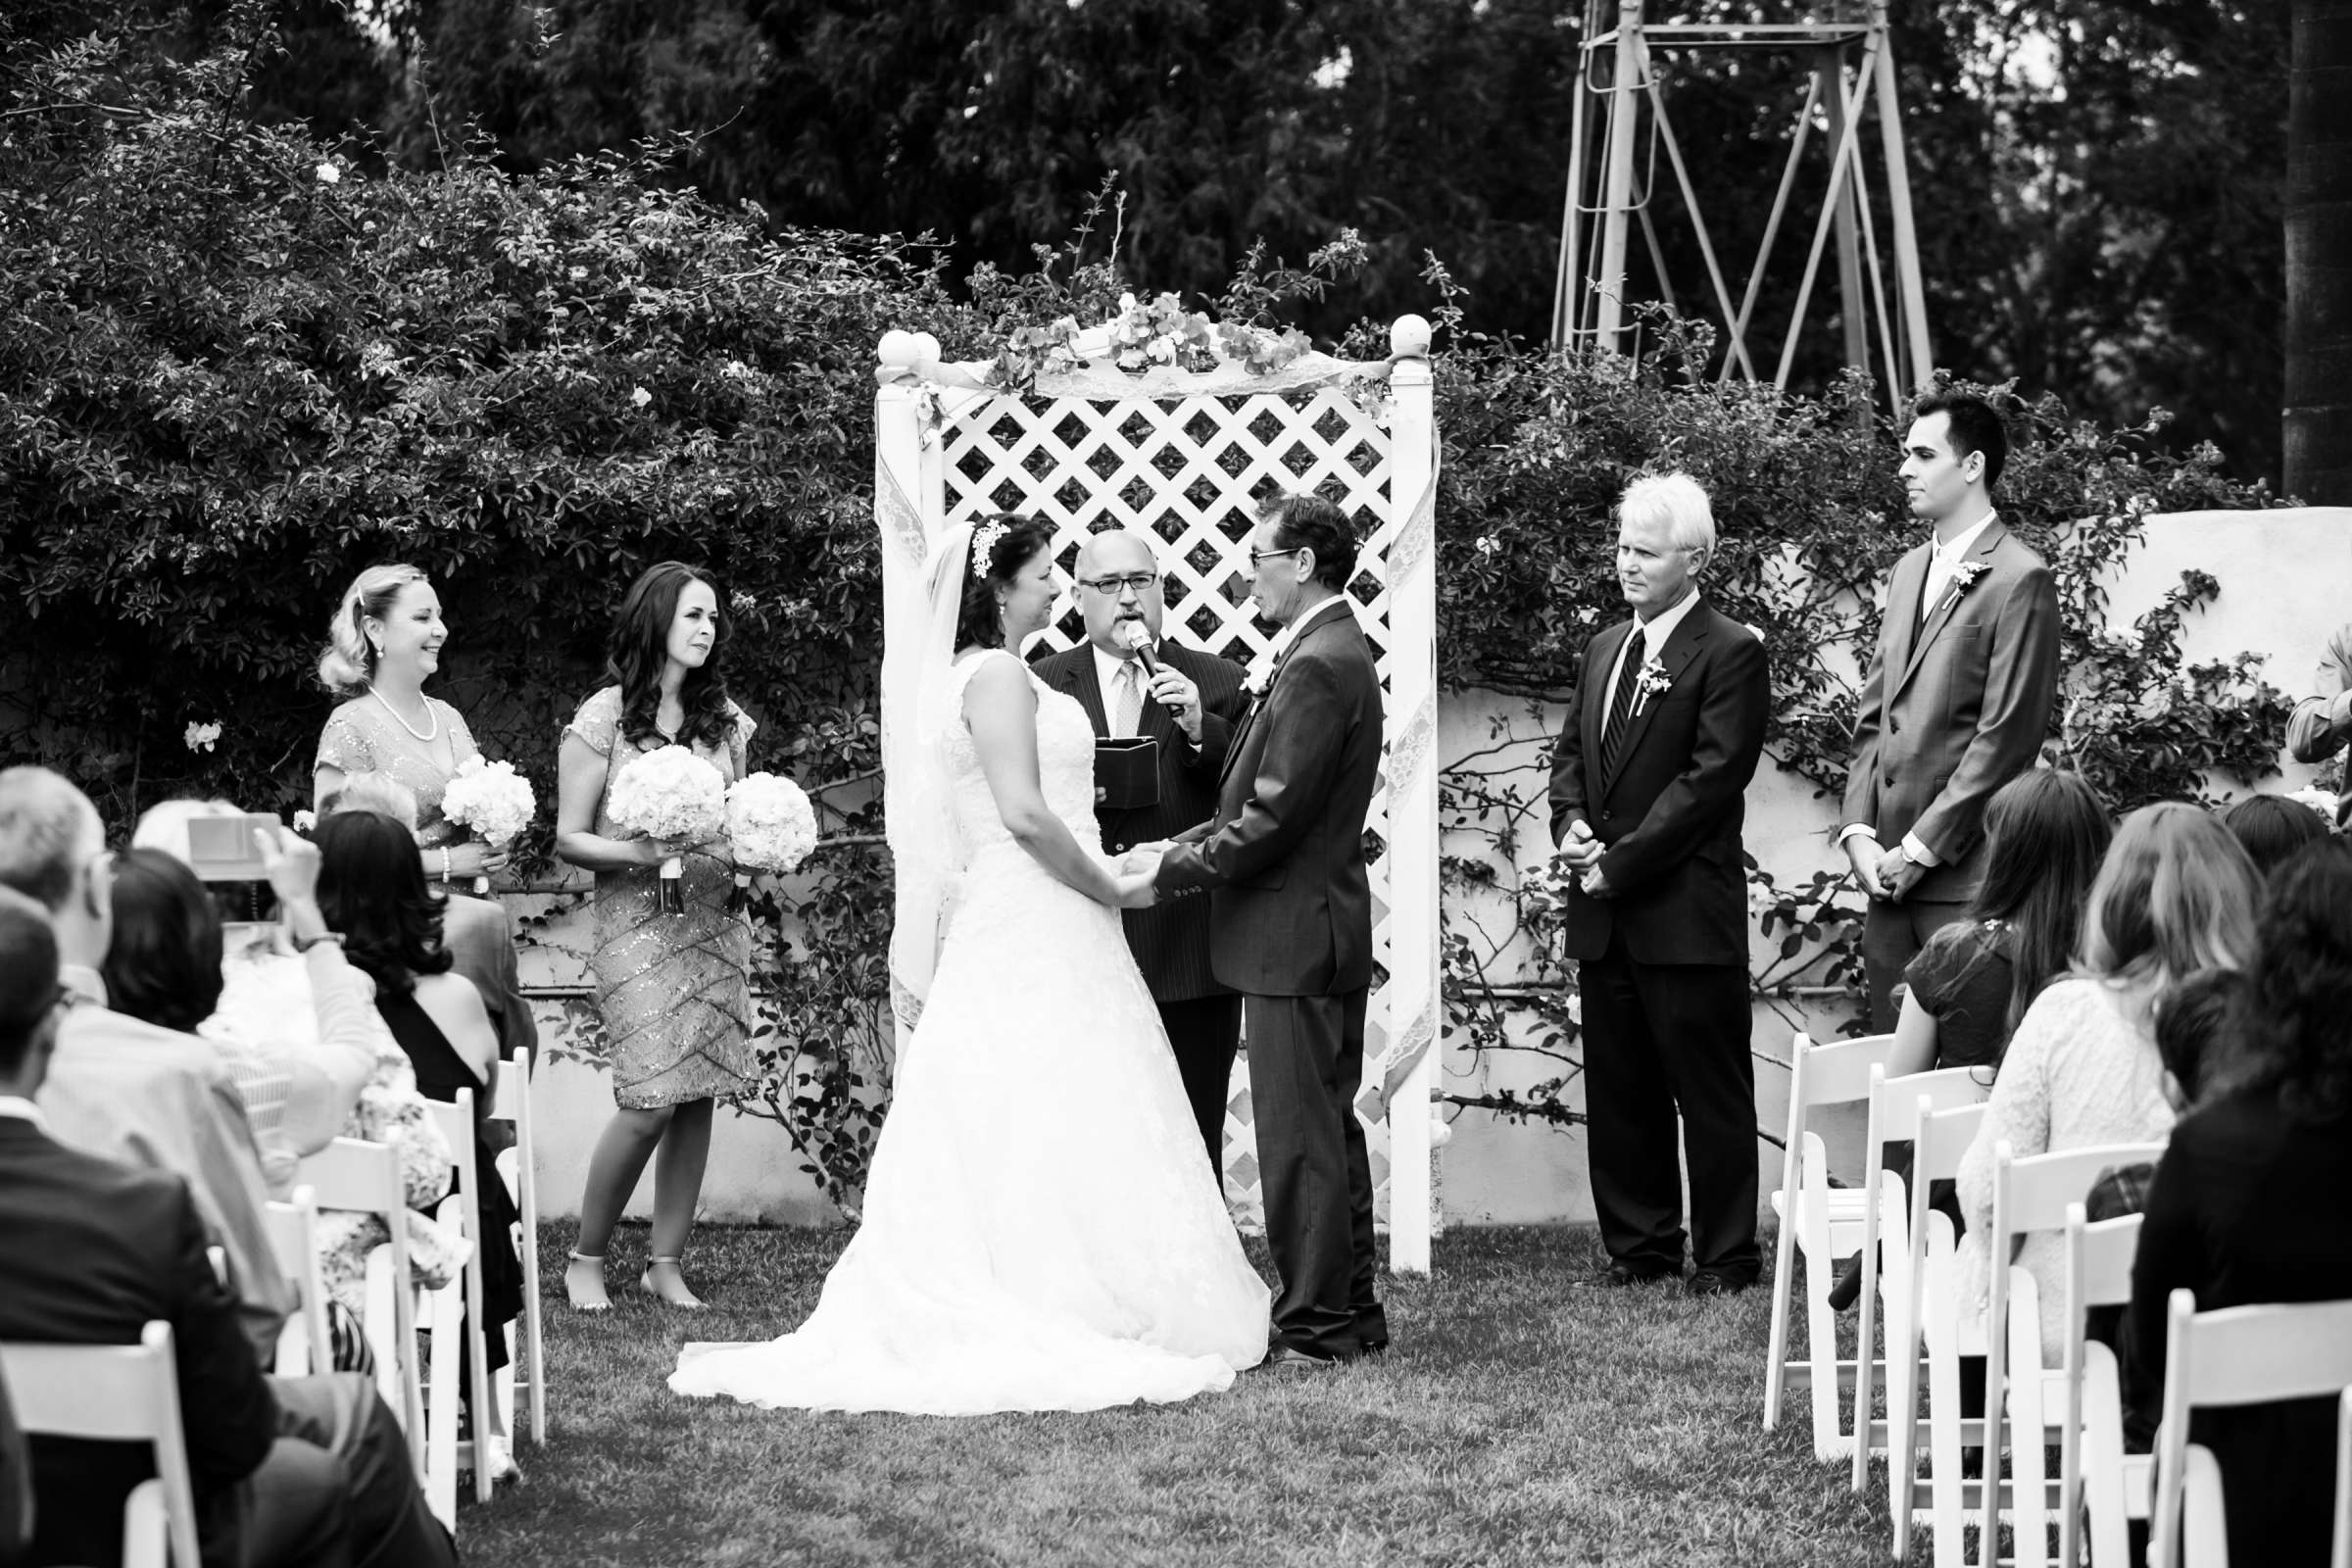 Rancho Buena Vista Adobe Wedding, Ellinor and Frank Wedding Photo #27 by True Photography